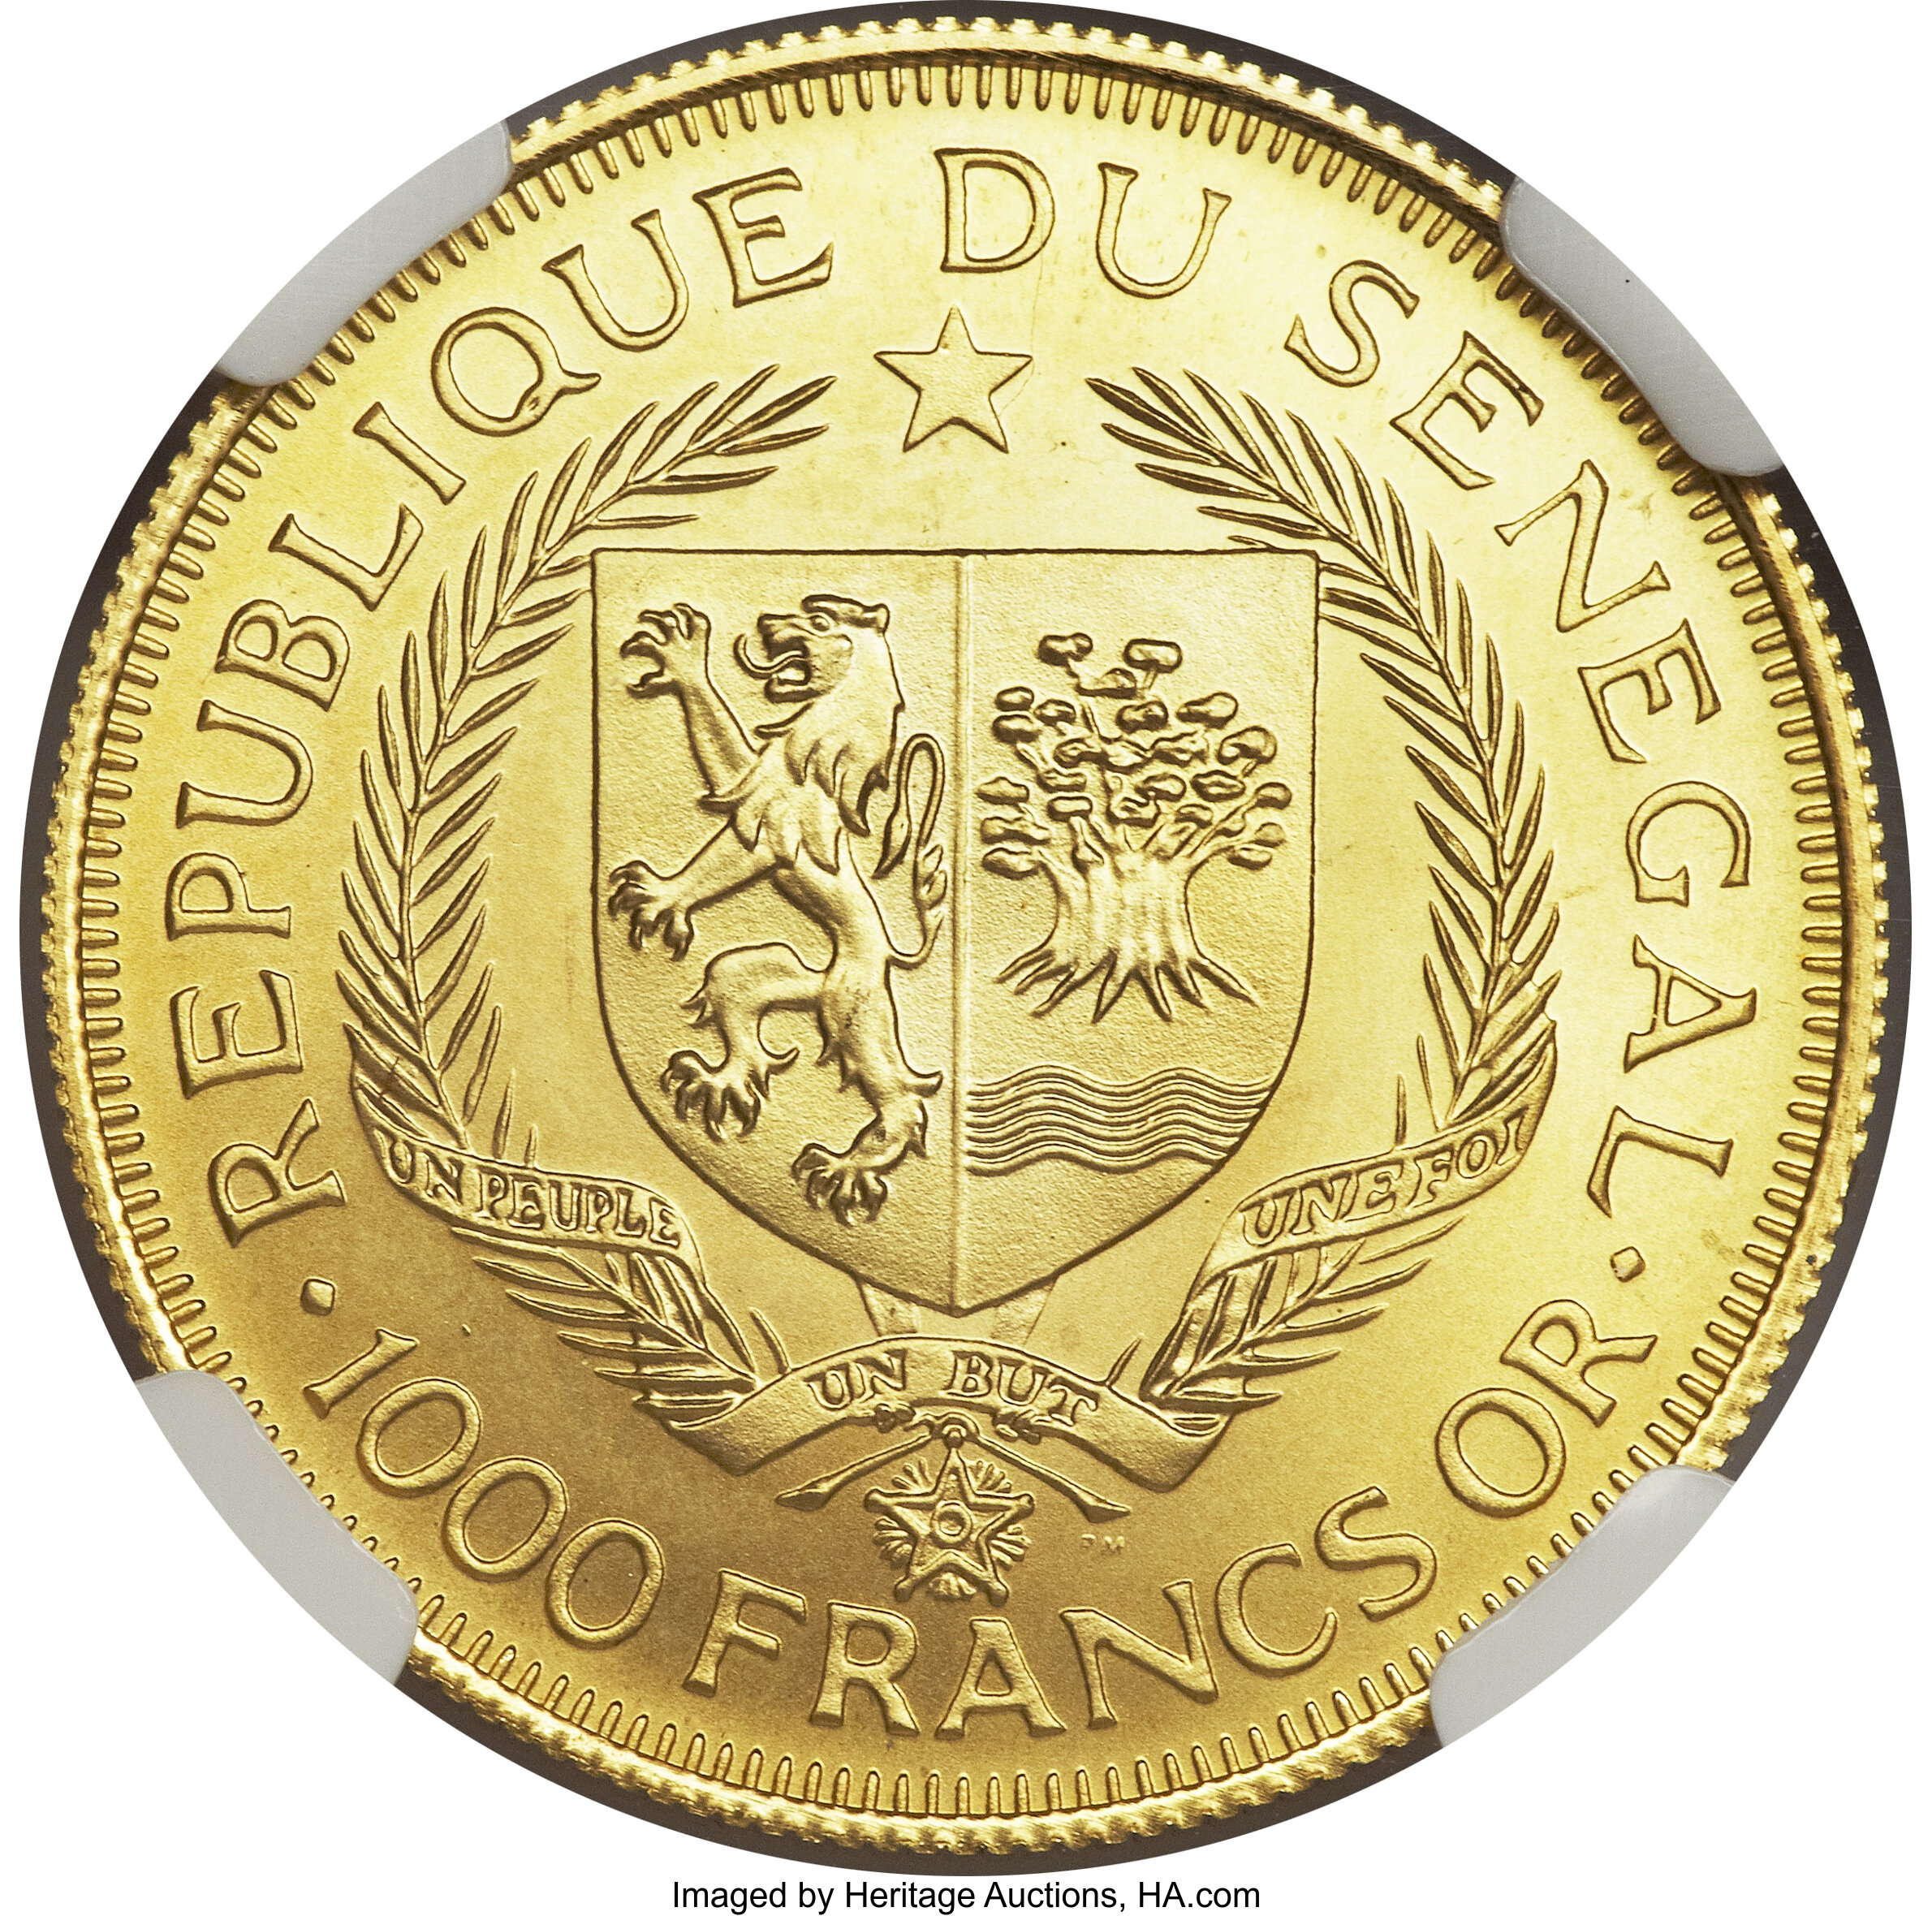 1000 francs - Eurafrique - 25 ans